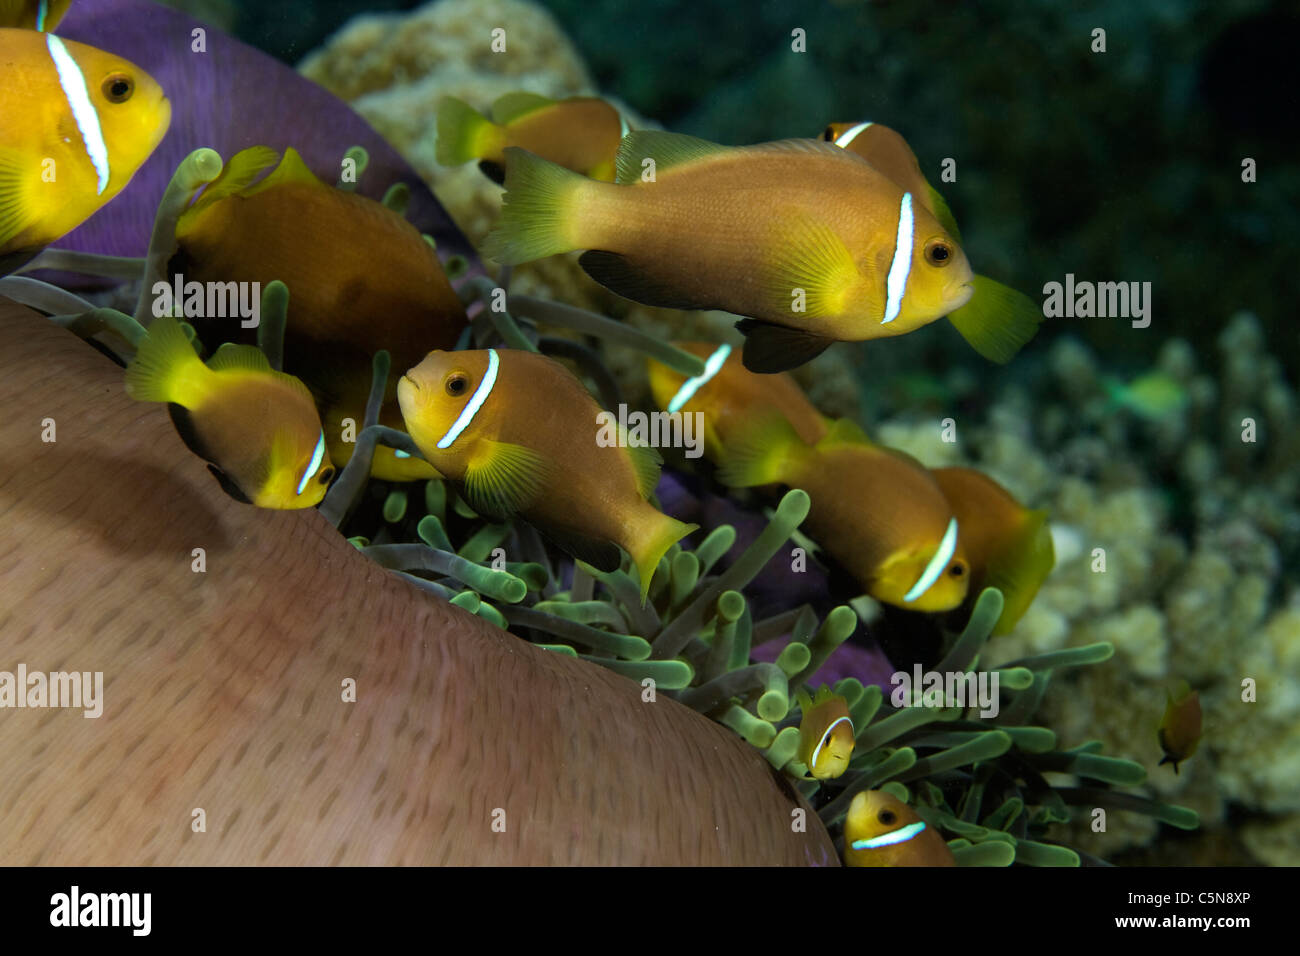 Famiglia di Maldive Anemonefish nella magnifica Anemone, Amphiprion nigripes, Heteractis magnifica, Oceano Indiano, Maldive Foto Stock